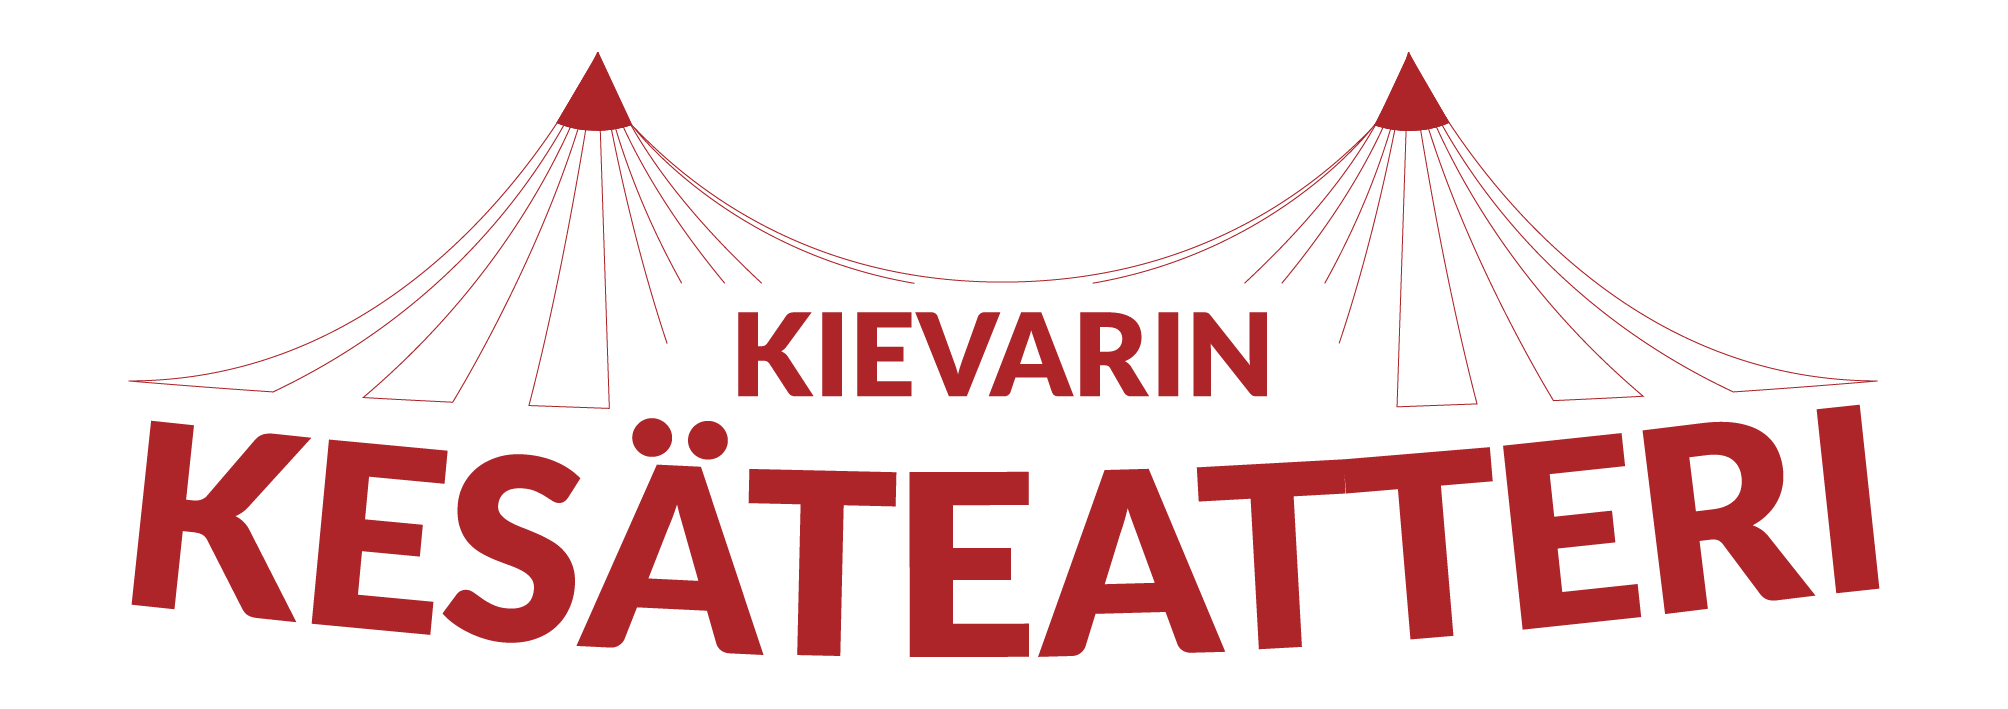 Kievarin Kesäteatterin logossa on kuva sirkusteltasta